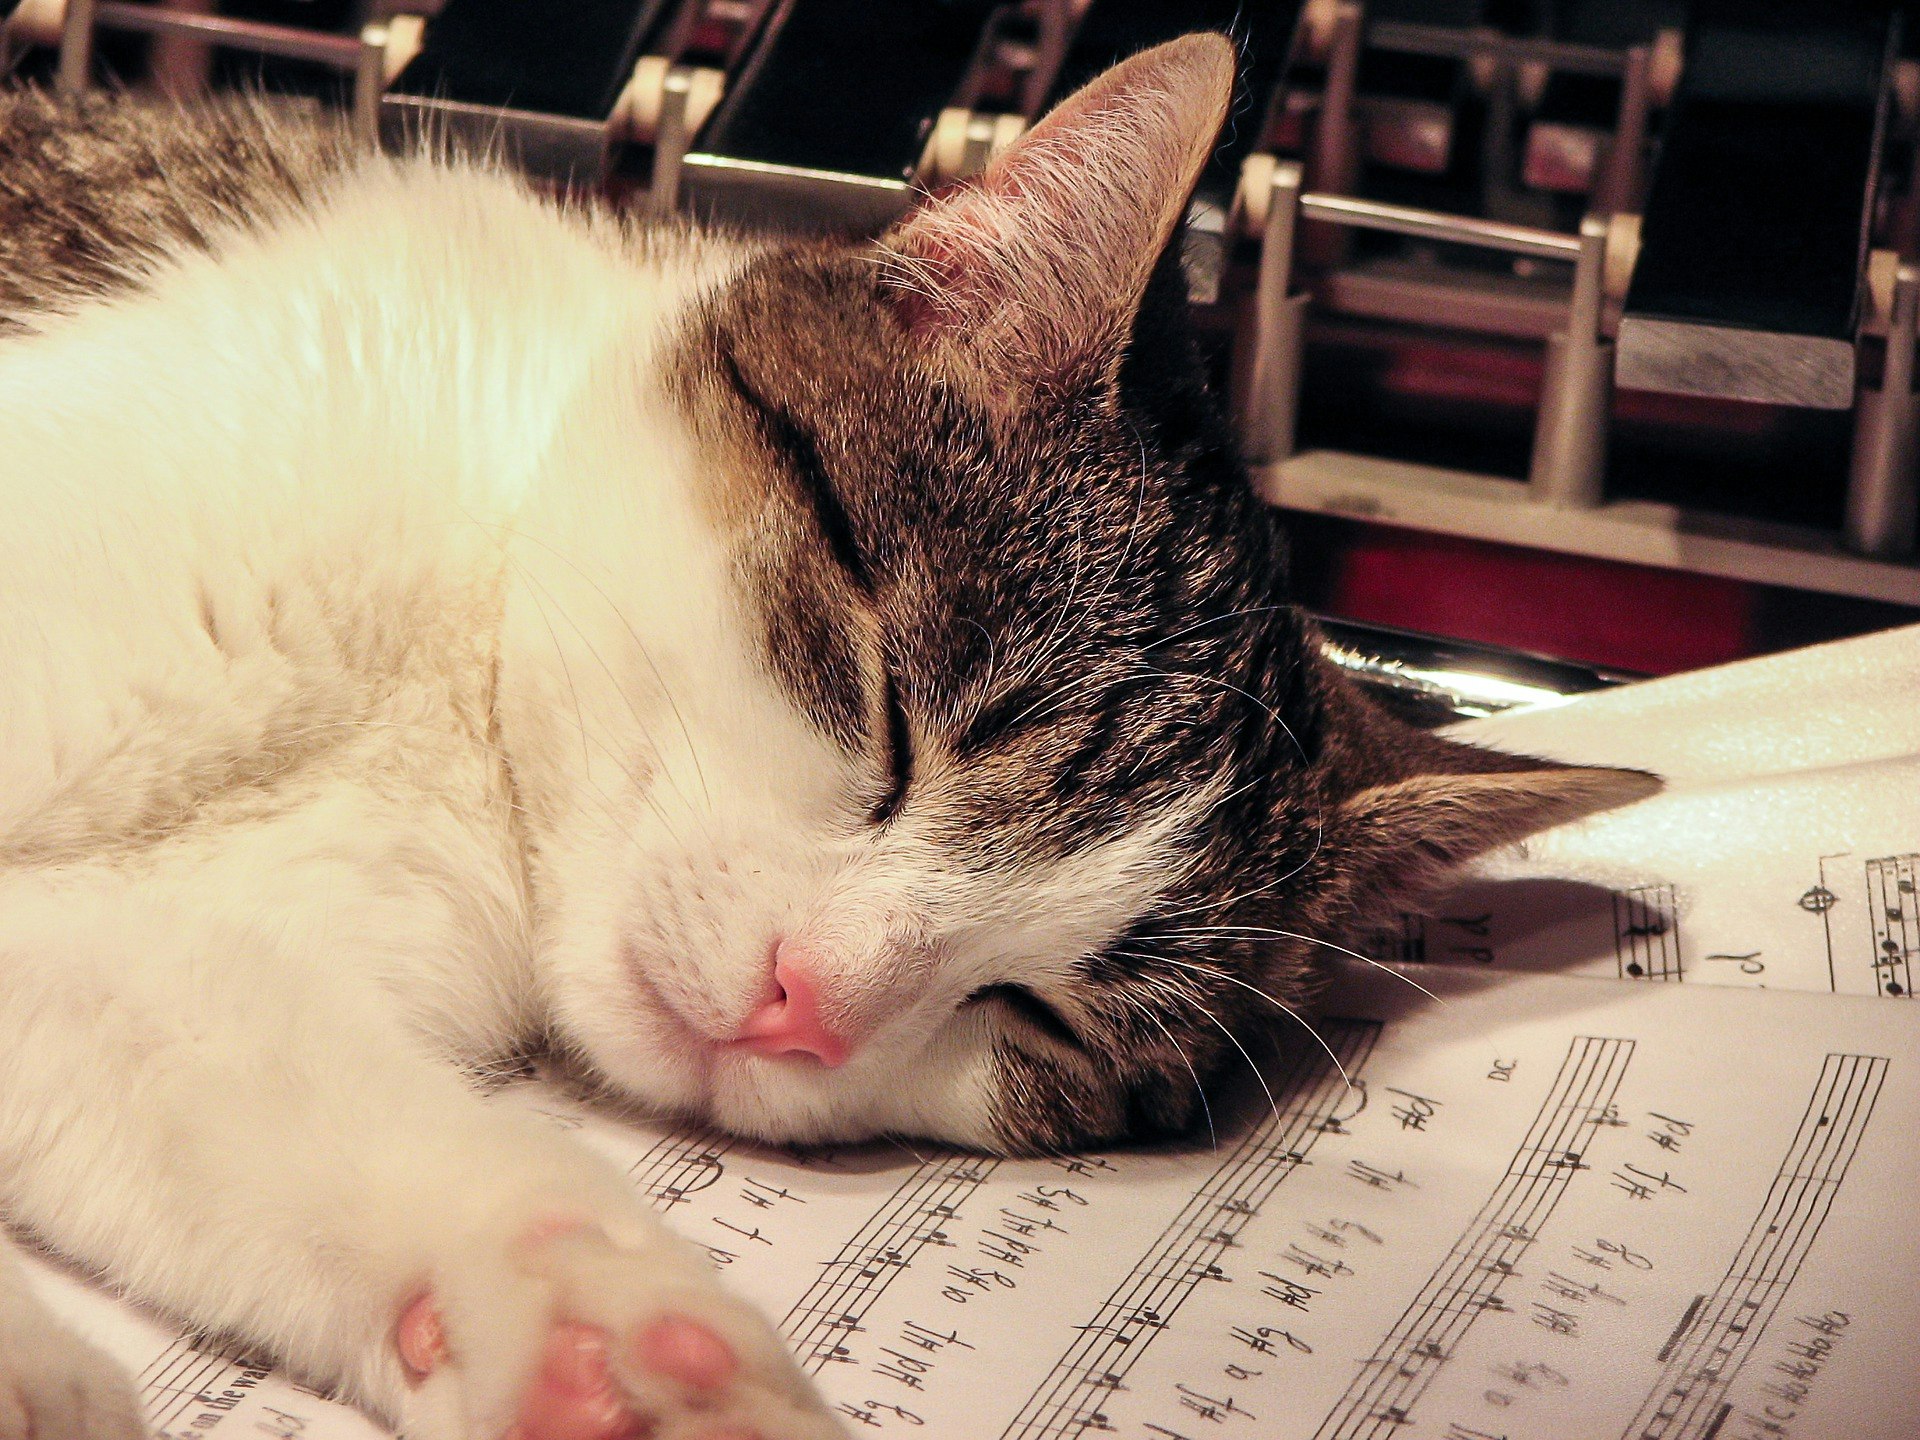 A cat sleeping on a music sheet.